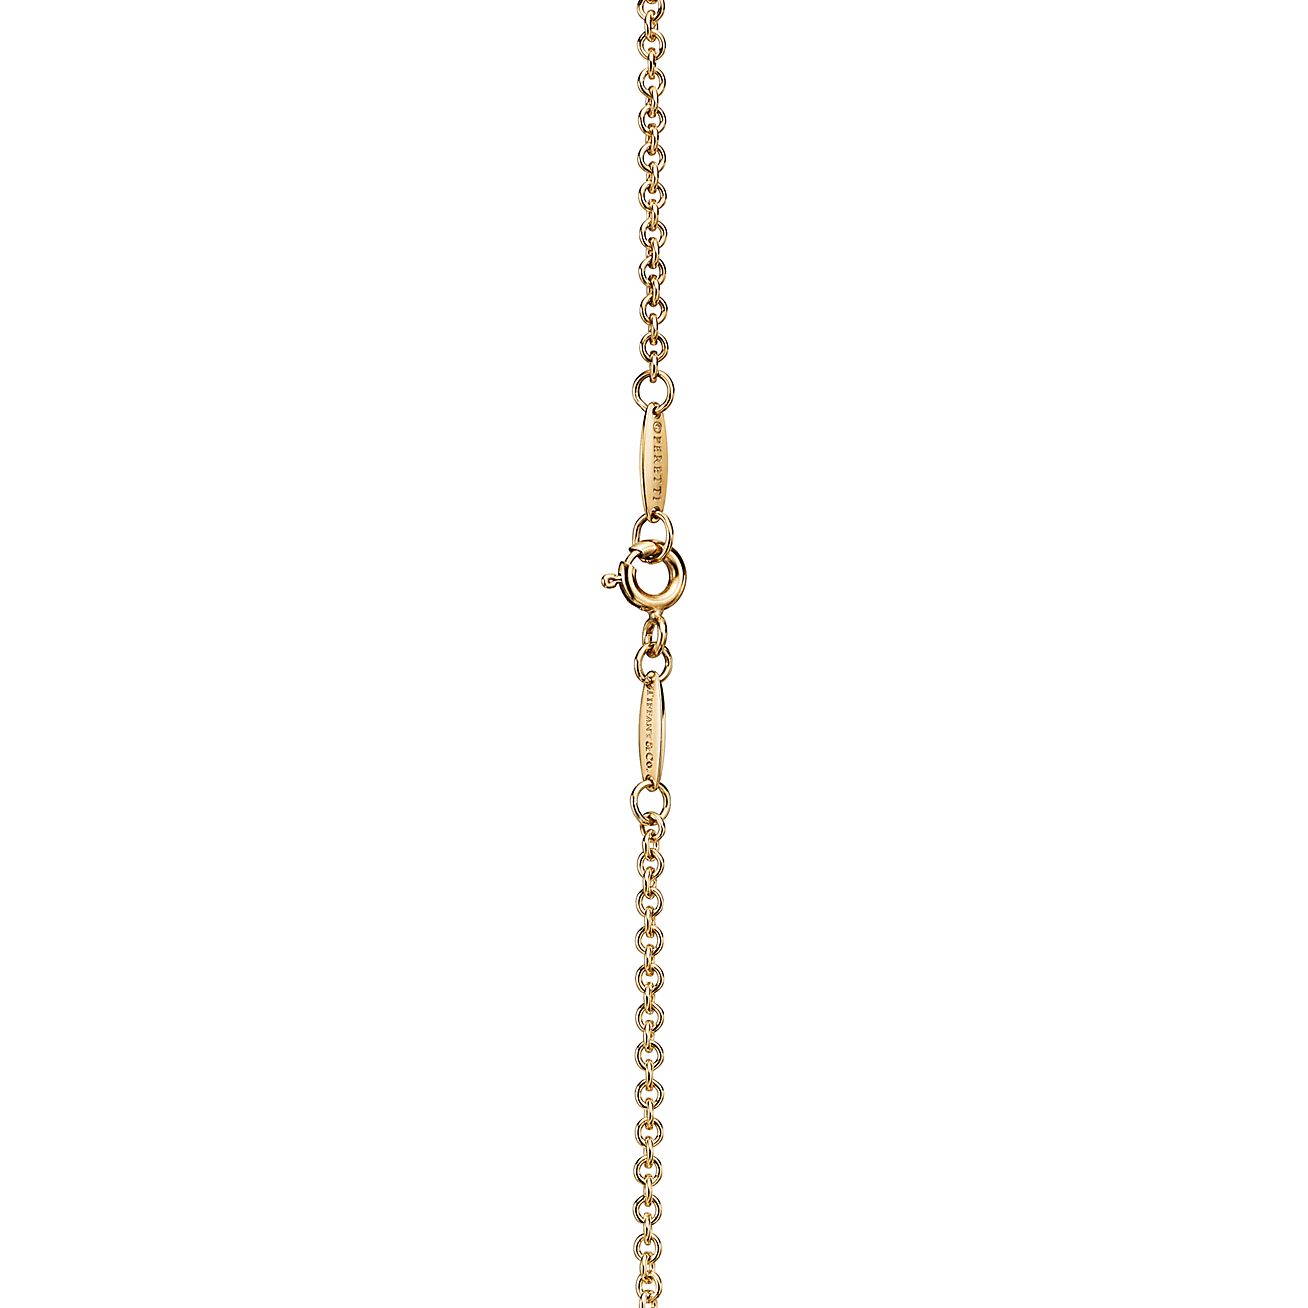 Elsa Peretti® Sevillana™ pendant in 18k gold with a silk cord, small.